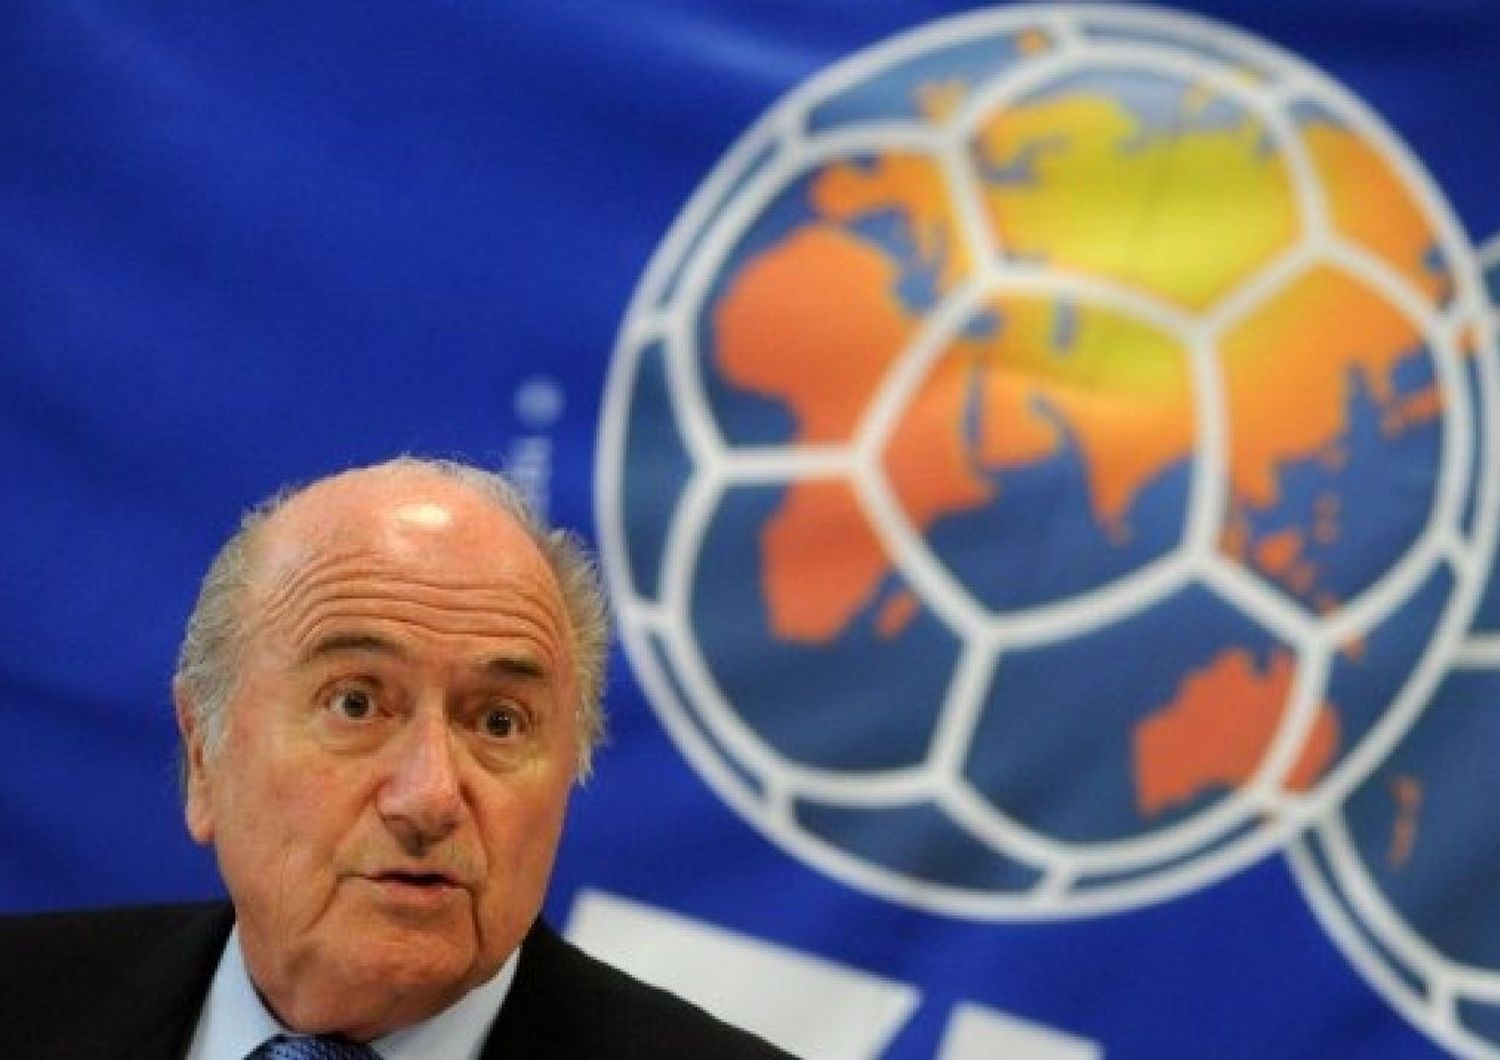 Tangenti Fifa, Blatter resistePlatini attacca: "lo cacceremo"